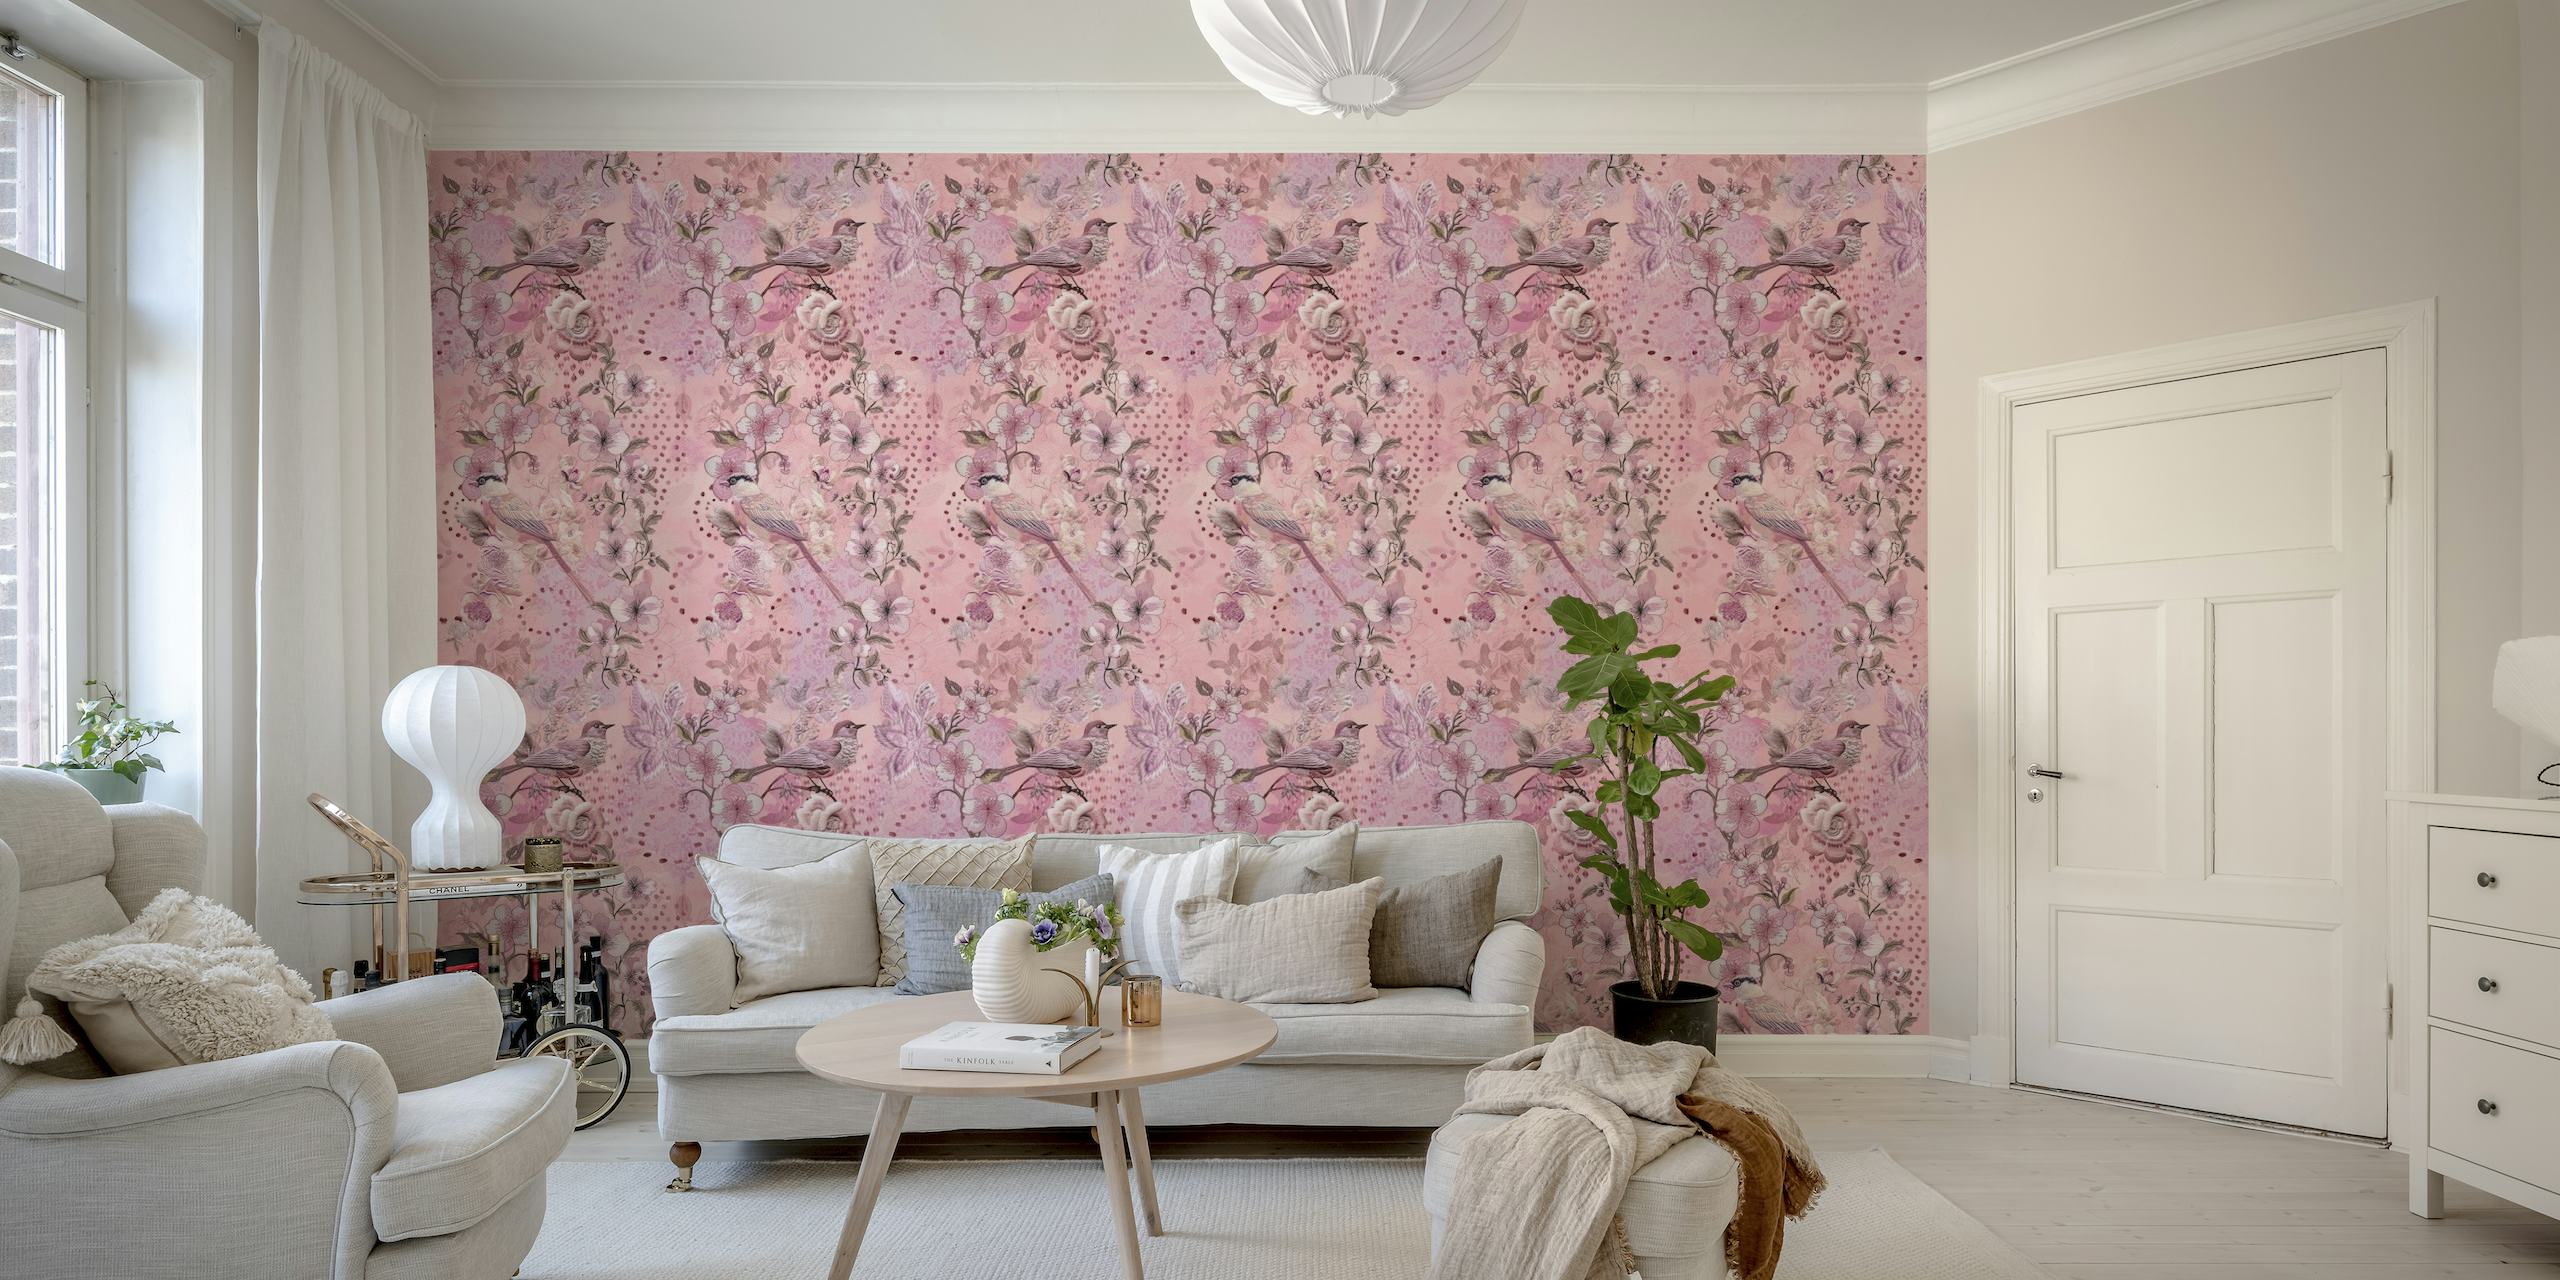 Fototapeta z haftowanymi ptakami i kwiatami w różowych odcieniach